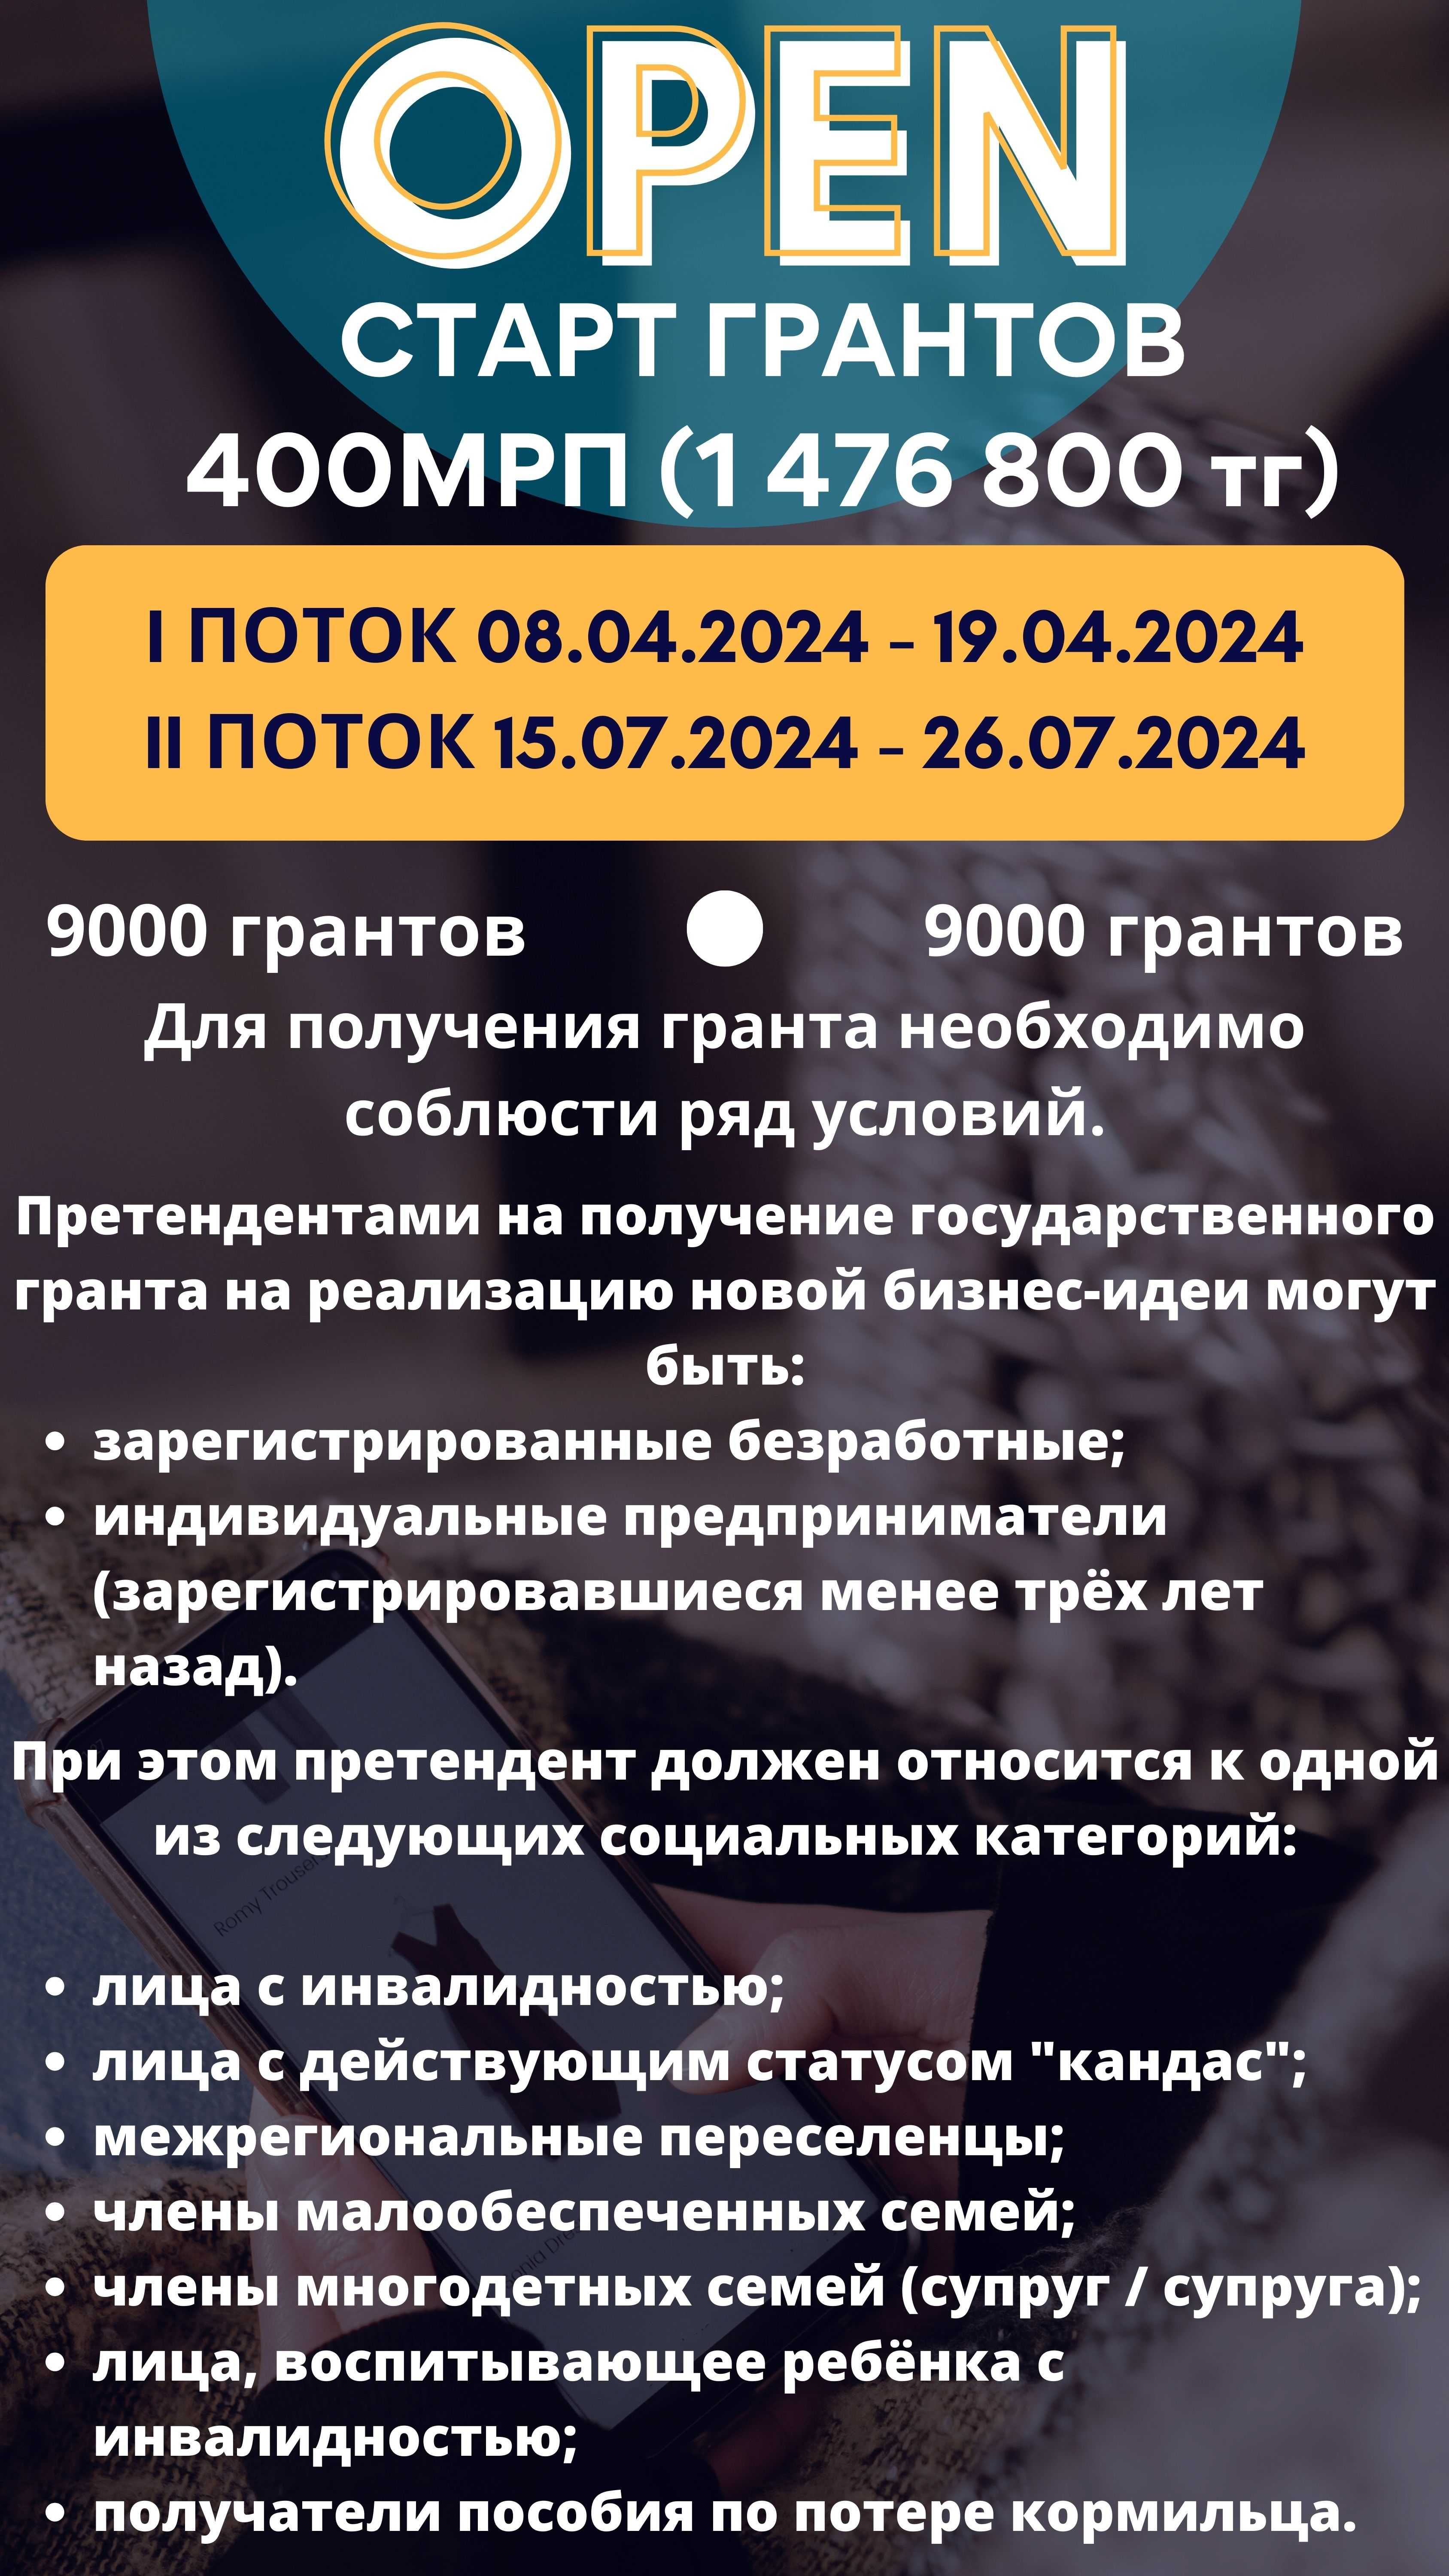 Бизнес план, гранты, 400 МРП, Zhas Project (жас проджект), Даму